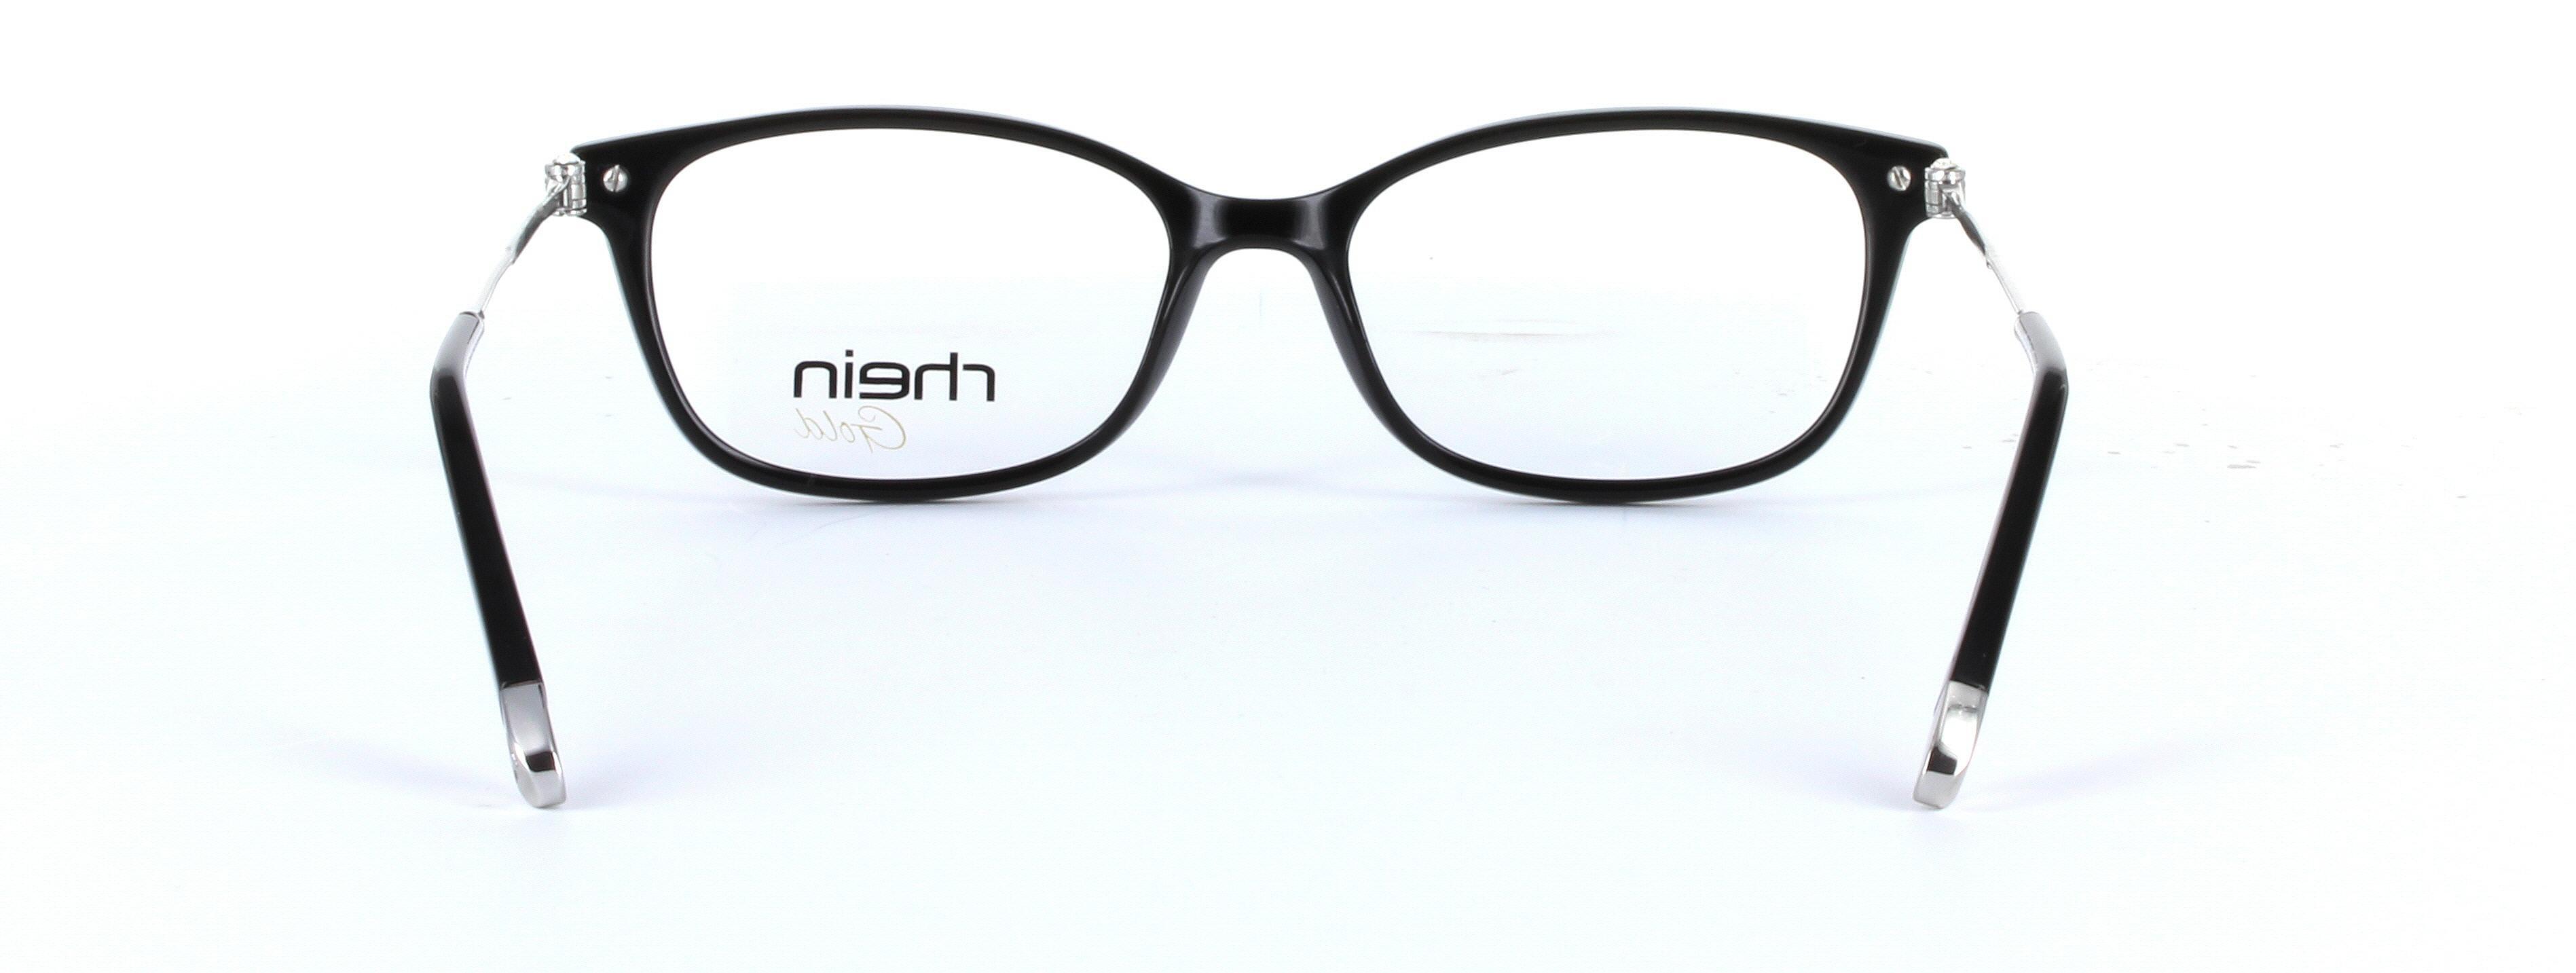 Locarno Black Full Rim Oval Plastic Glasses - Image View 3